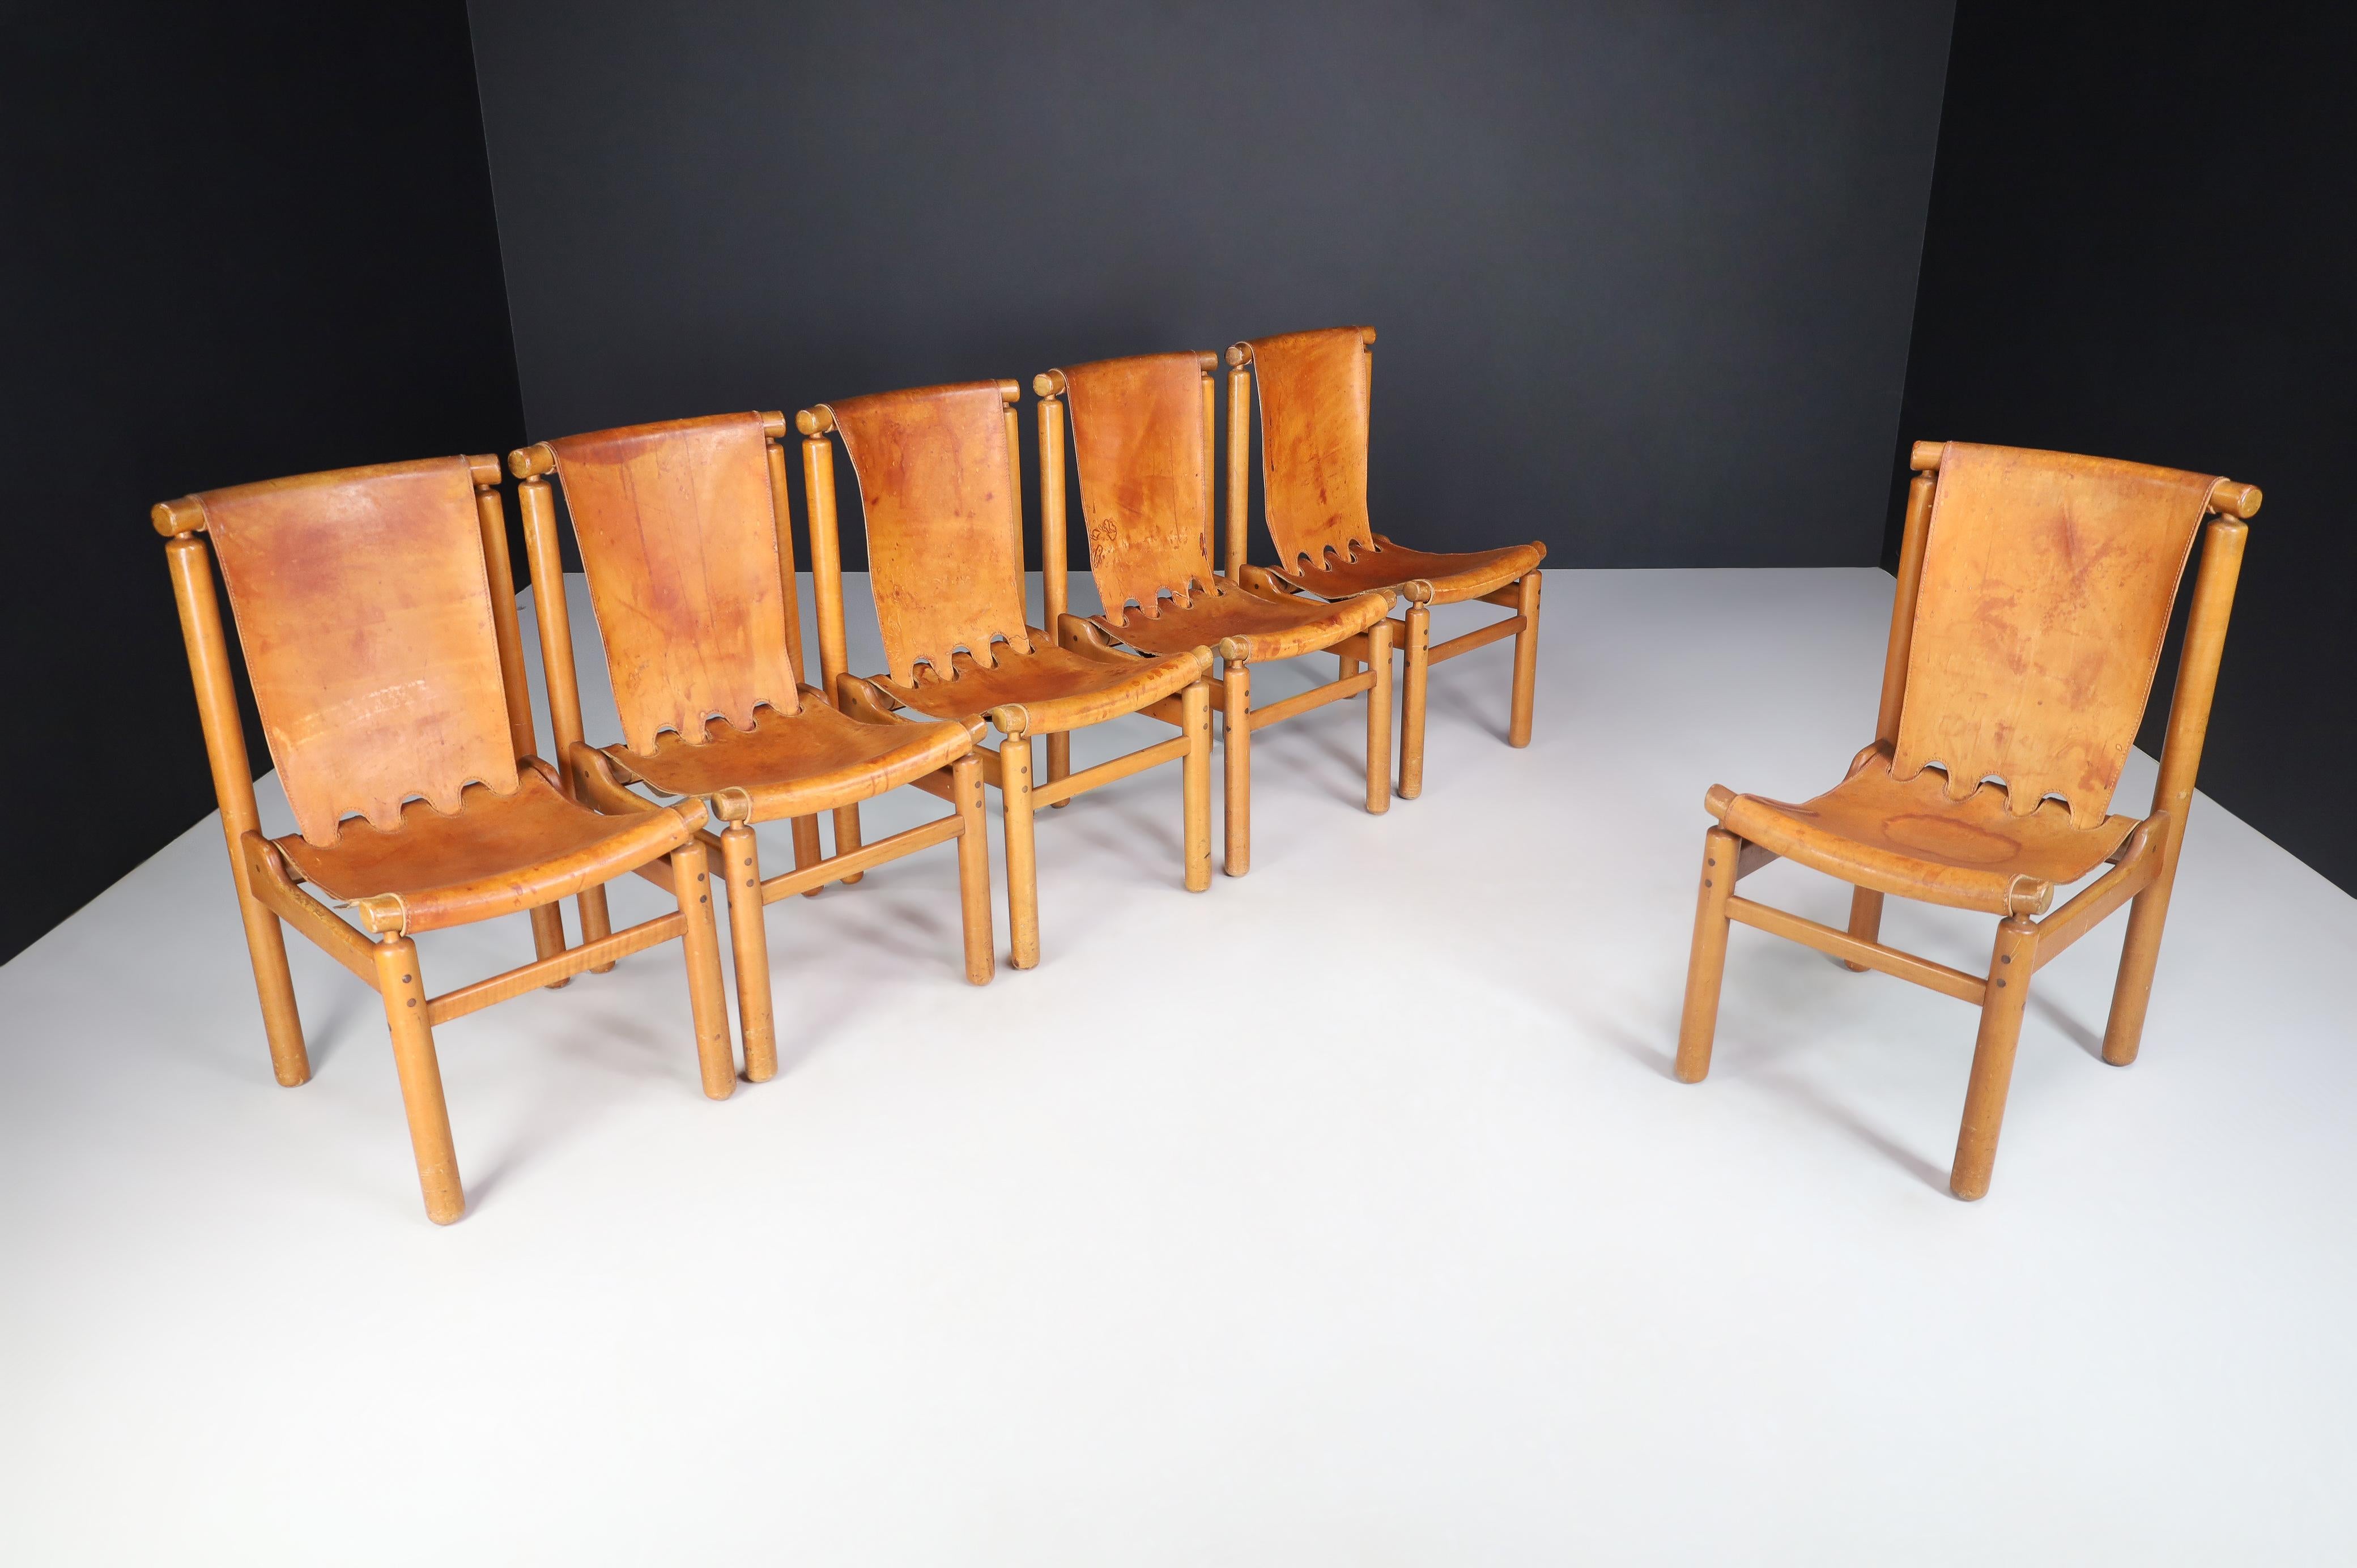 Ilmari Tapiovaara Satz von zehn Esszimmerstühlen aus cognacfarbenem Leder, Finnland, 1950er Jahre

Die Stühle von Ilmari Tapiovaara, die in den 1950er Jahren in Finnland für La Permanente Mobili Cantù hergestellt wurden, sind ein wahres Wunderwerk